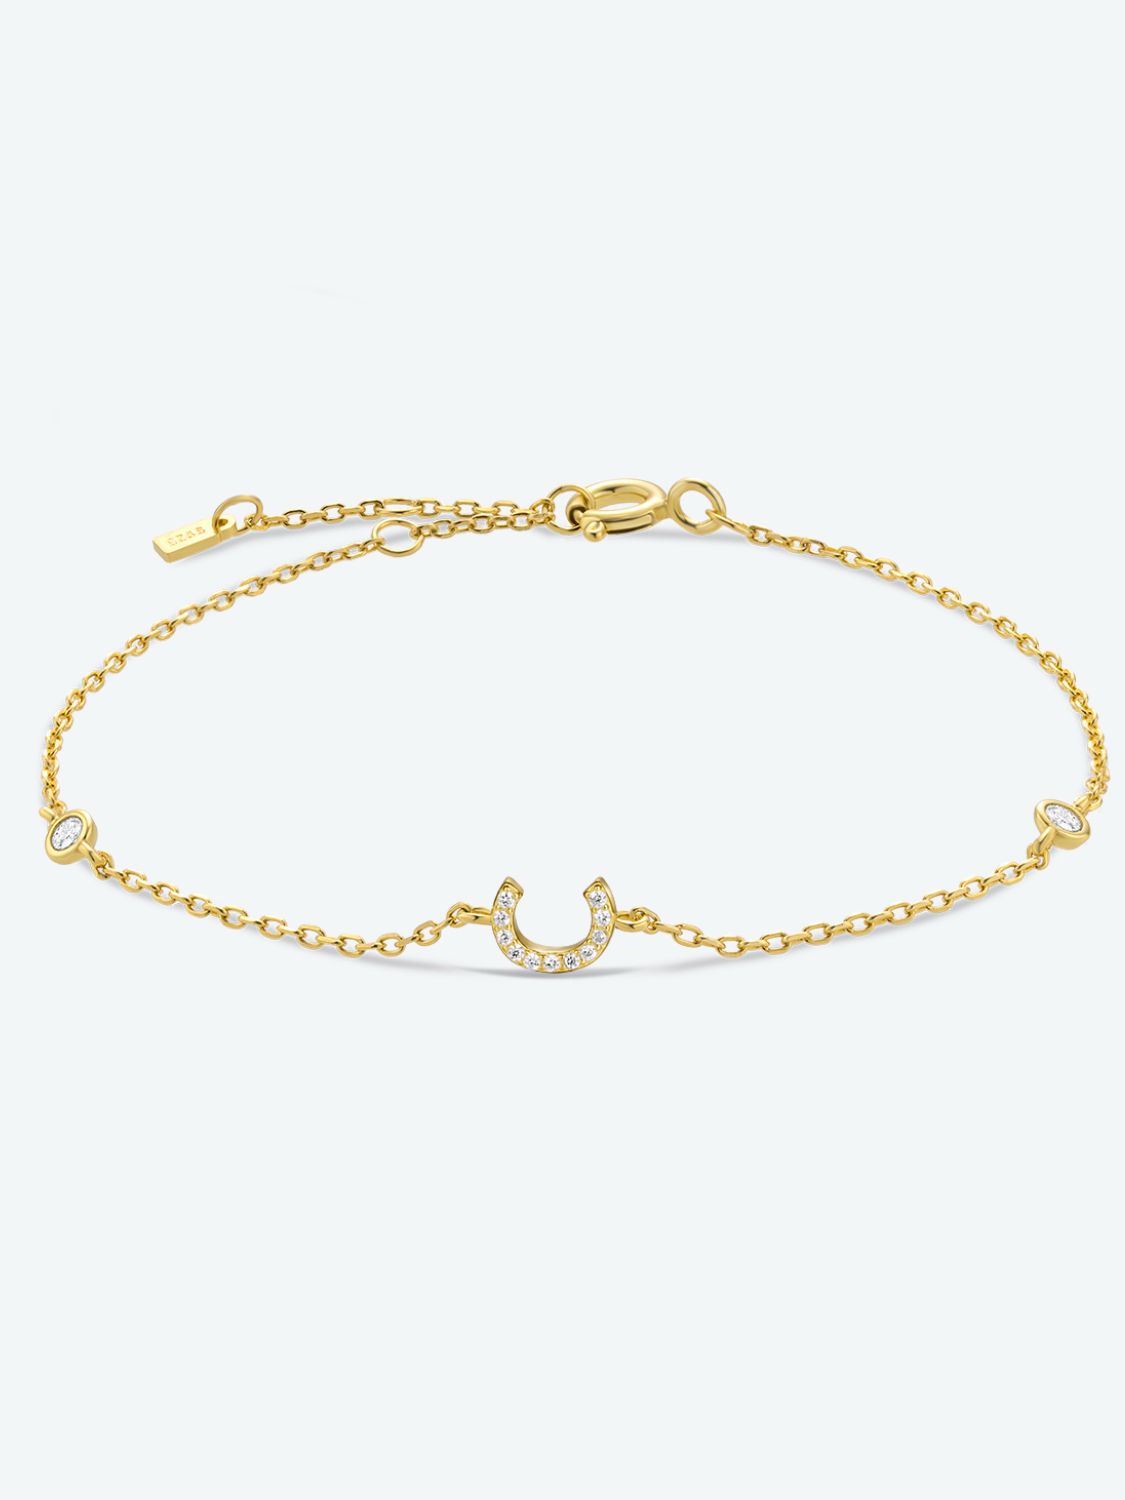 A To F Zircon 925 Sterling Silver Bracelet - C-Gold / One Size - Women’s Jewelry - Bracelets - 13 - 2024